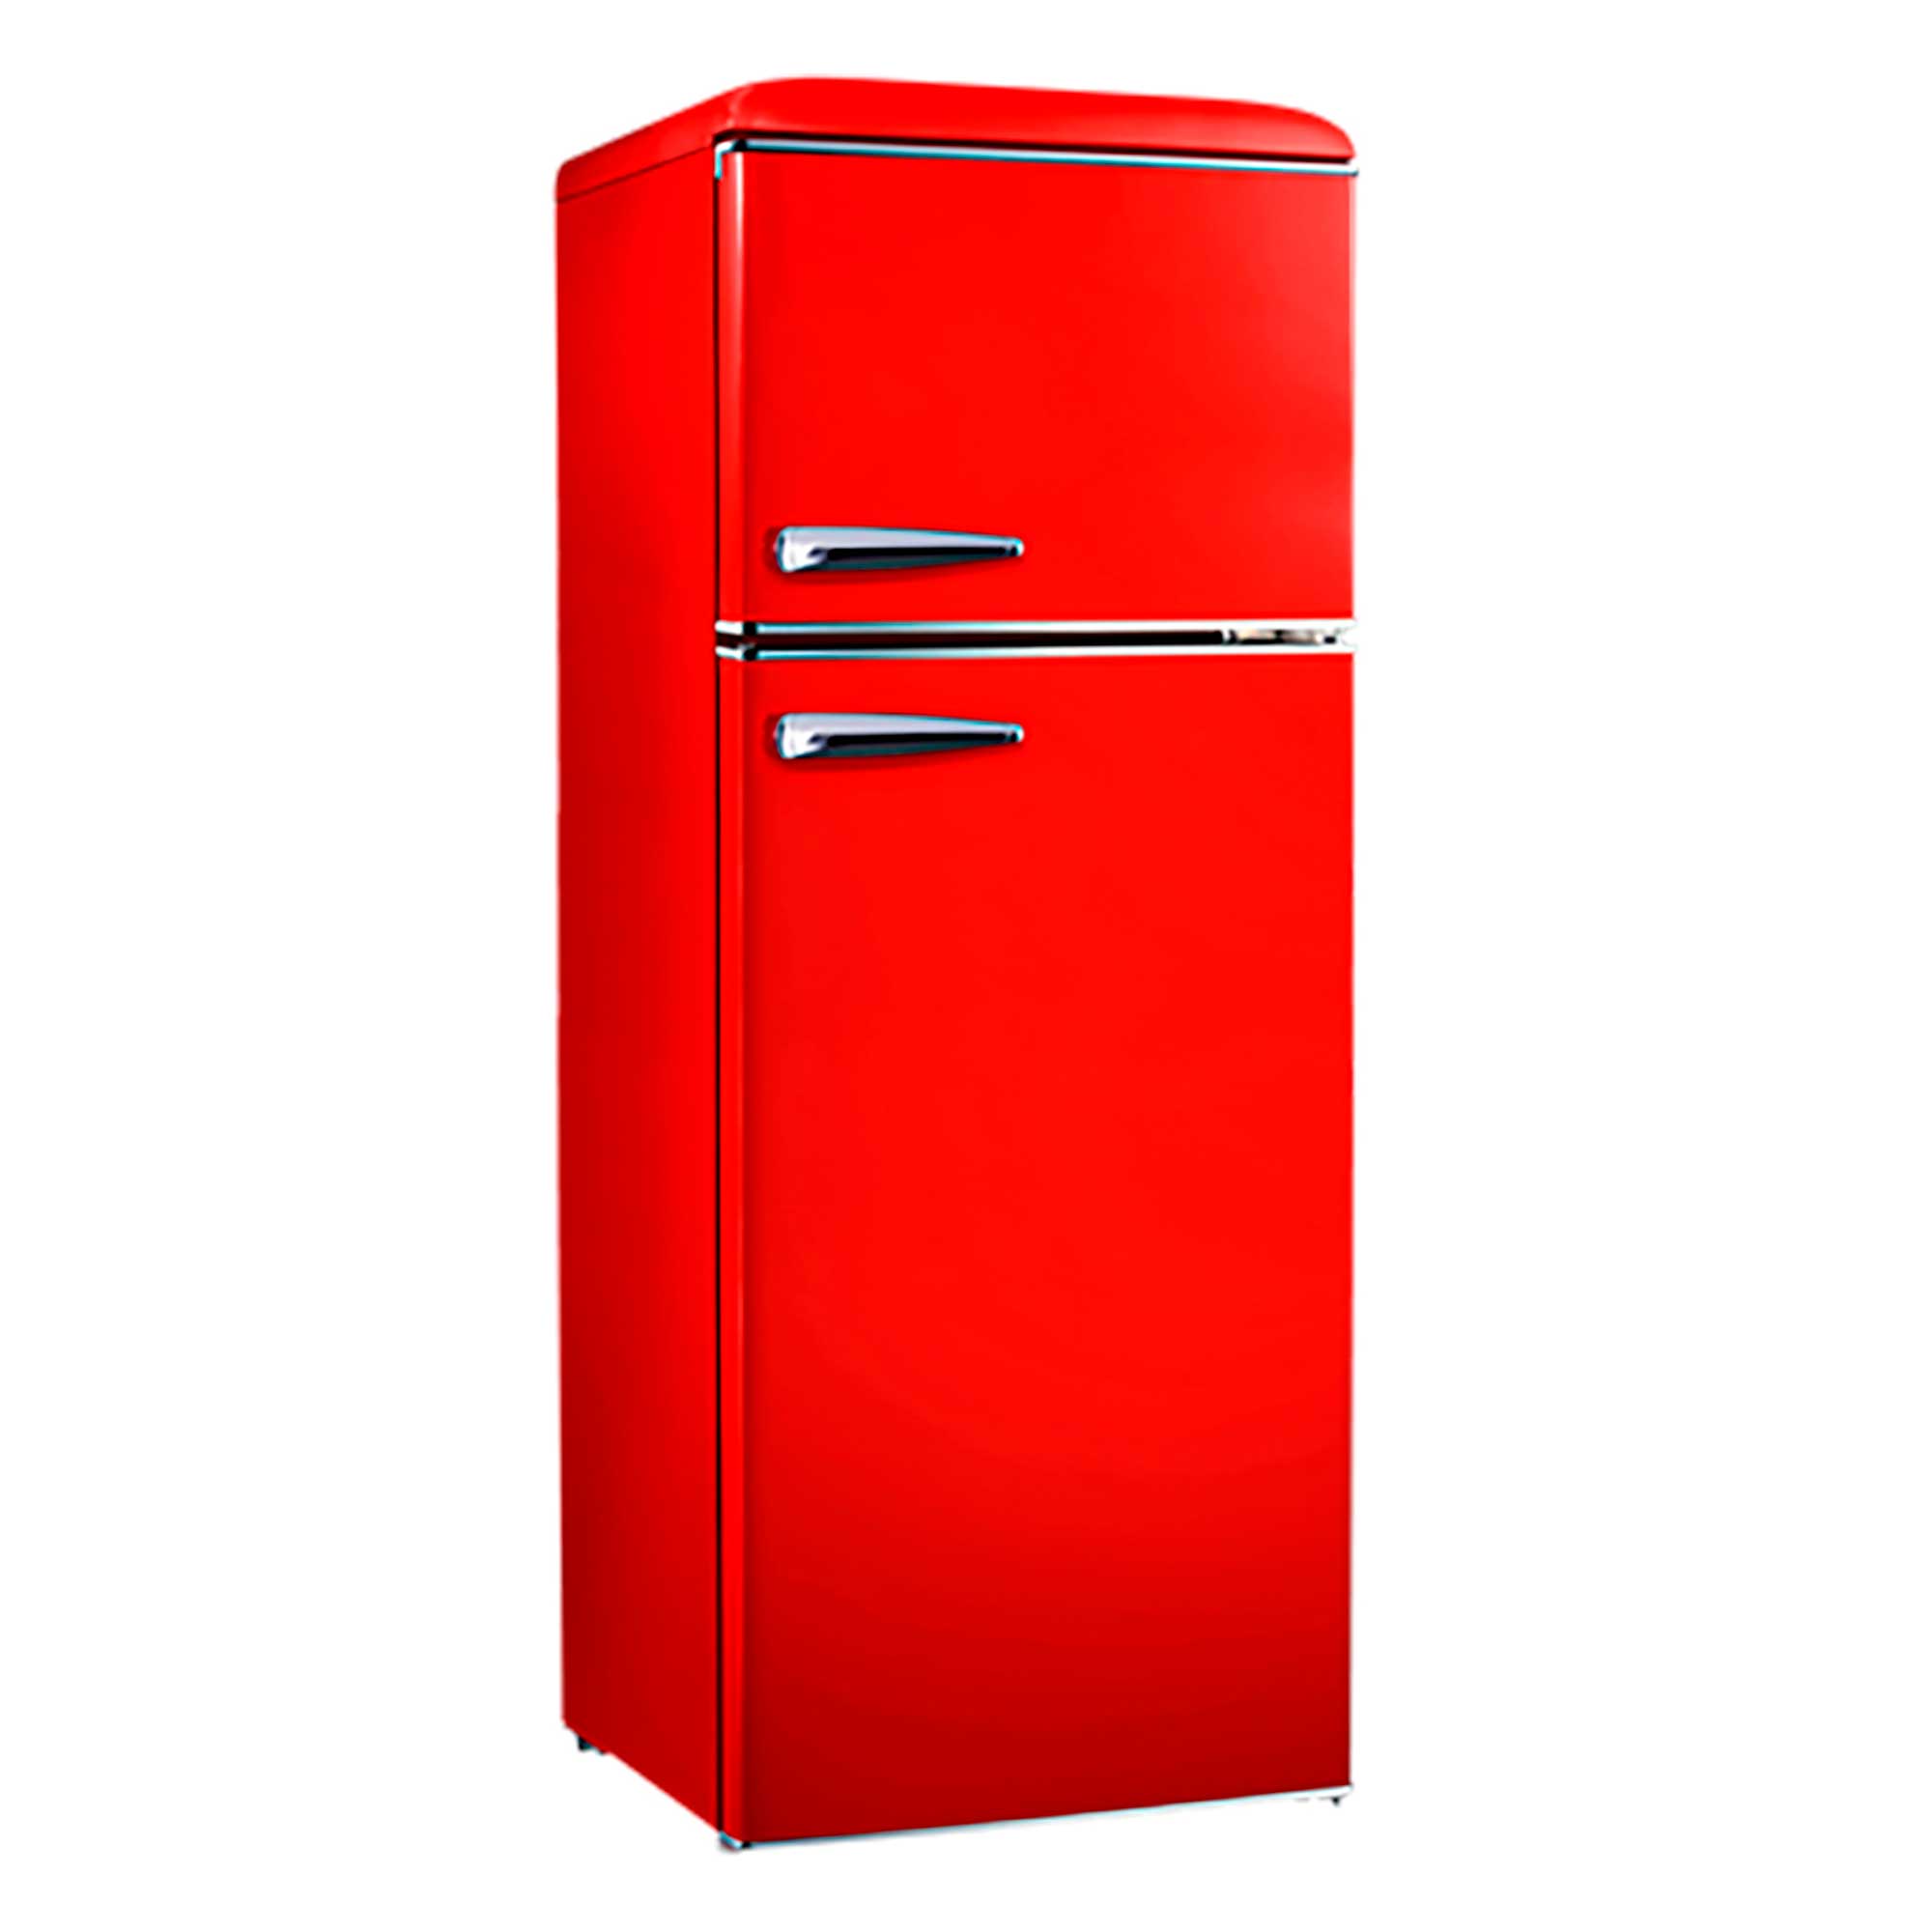 Refrigerador retro 230L rojo